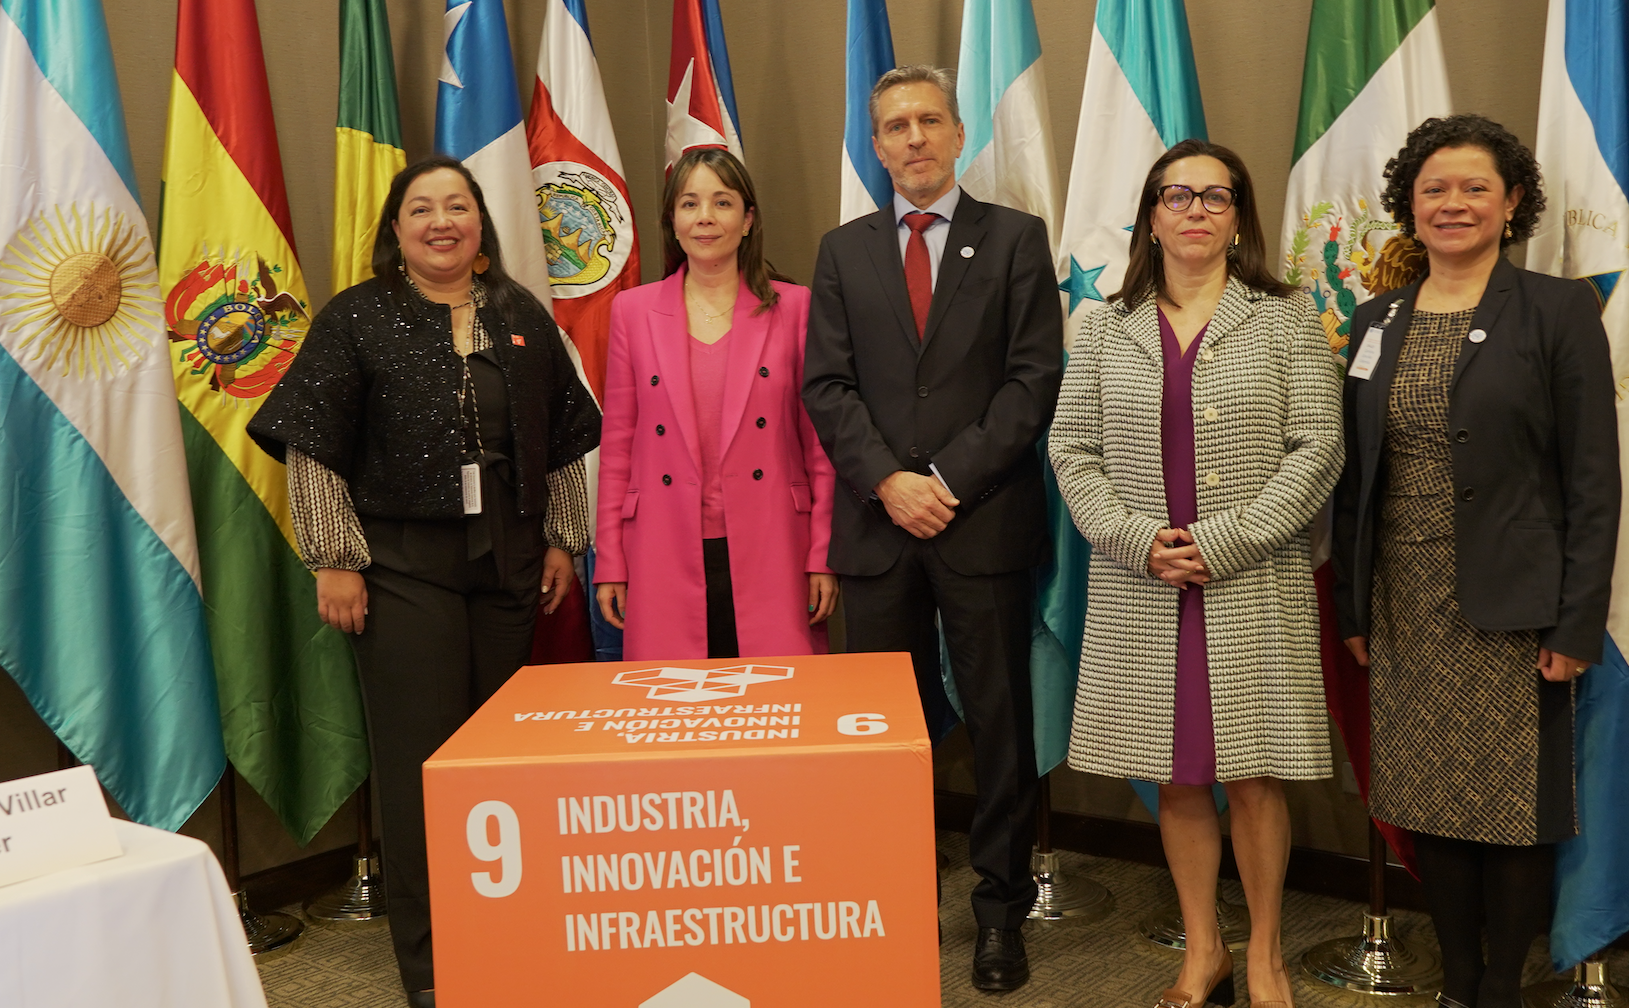 La ONUDI y el Ministerio de Comercio, Industria y Turismo, en coordinación con el Ministerio de Relaciones Exteriores, impulsan el Objetivo de Desarrollo Sostenible 9 en Colombia y la región